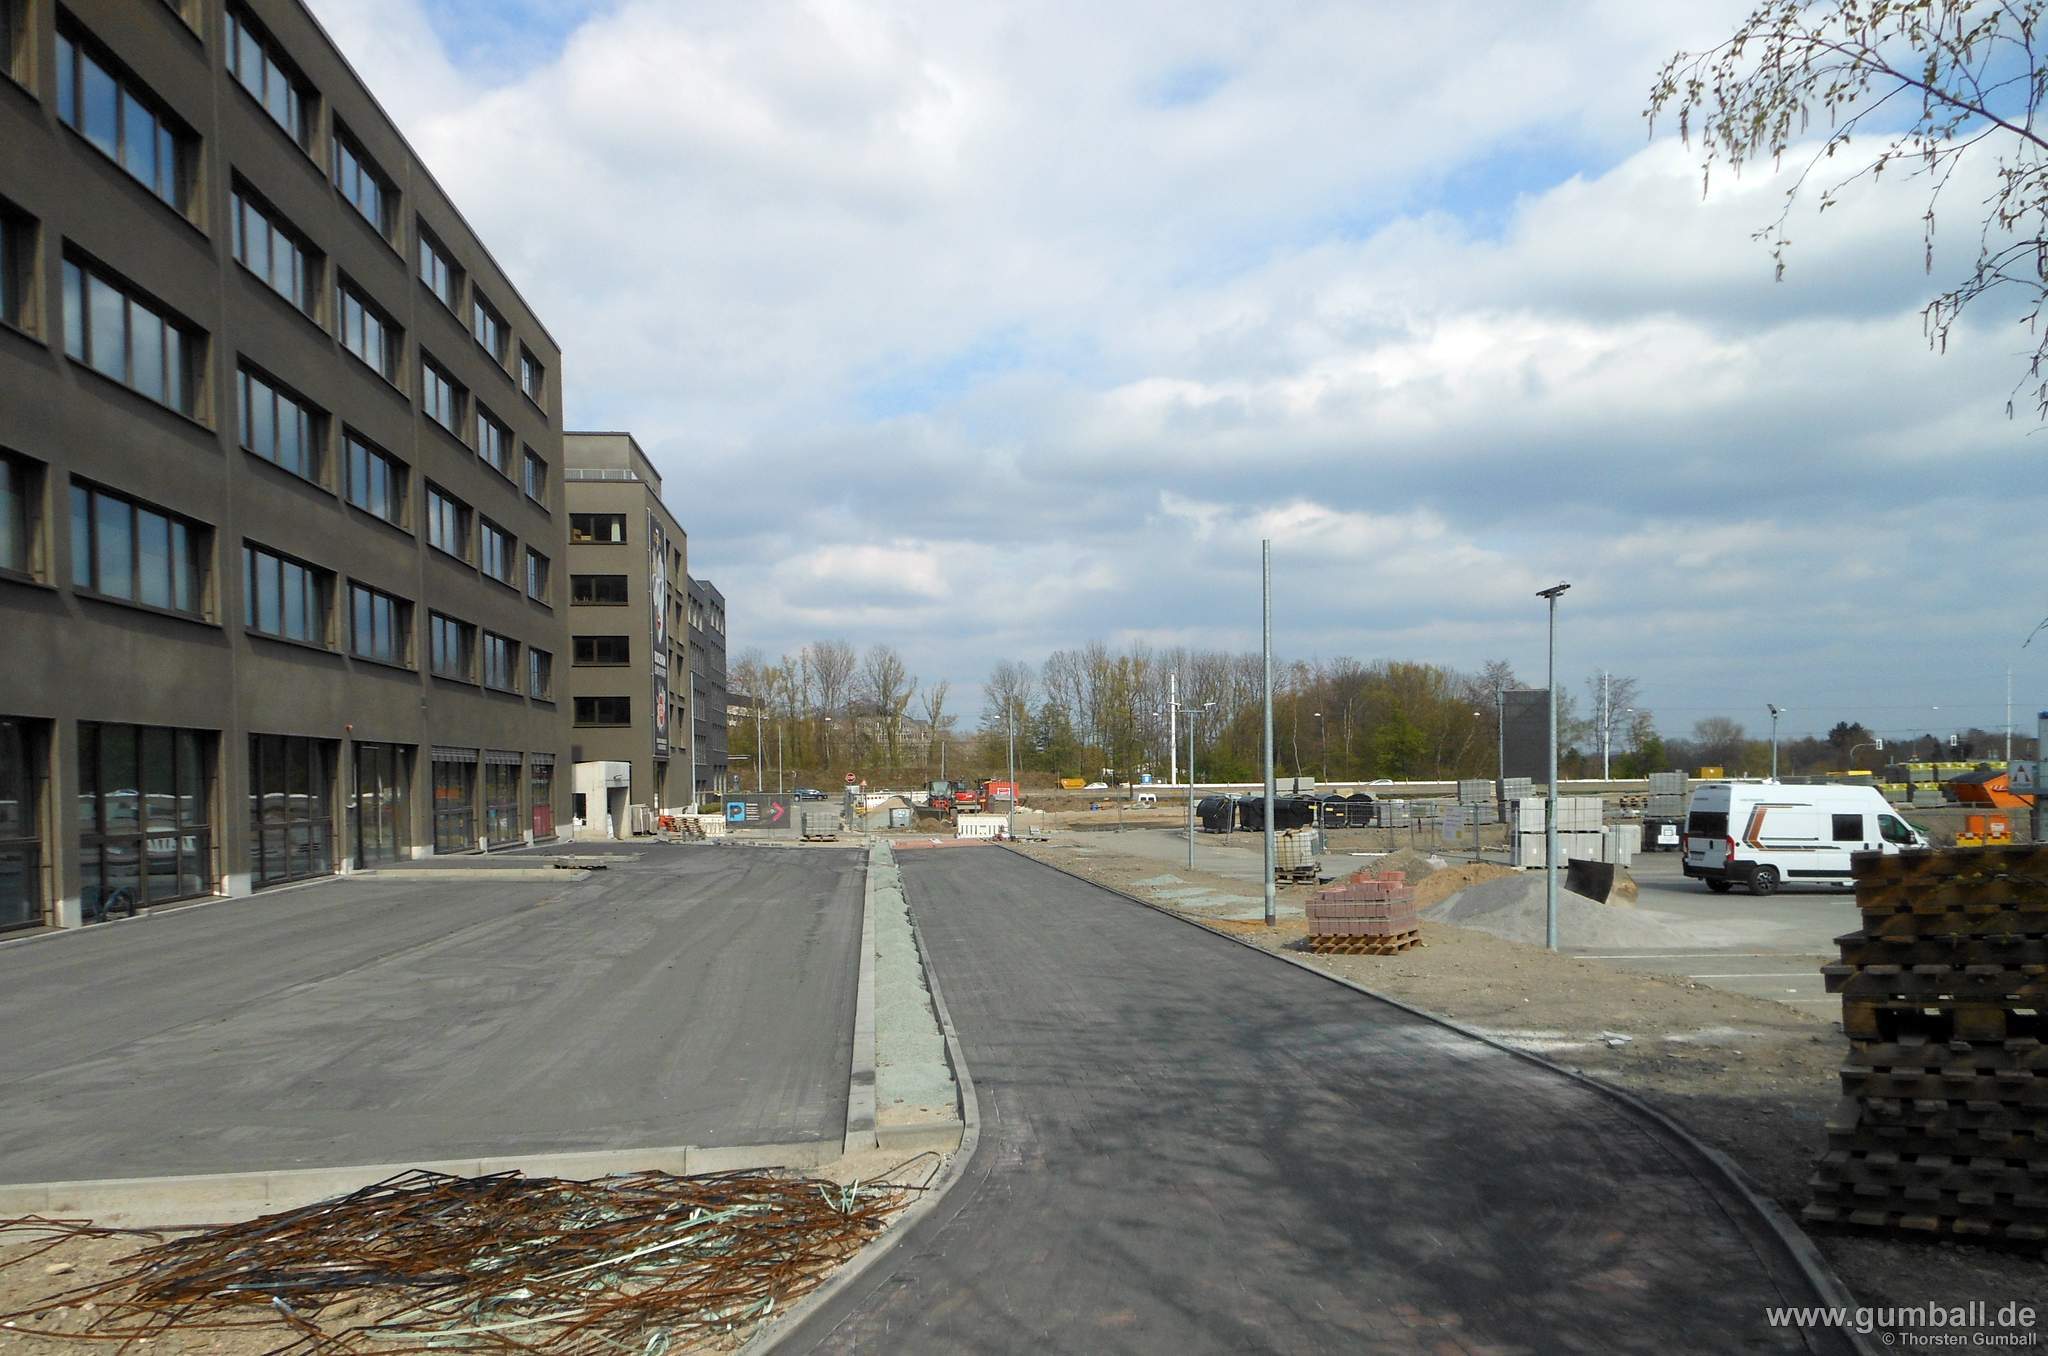 Seven Stones Baustelle, Bochum - April 2021 (3)